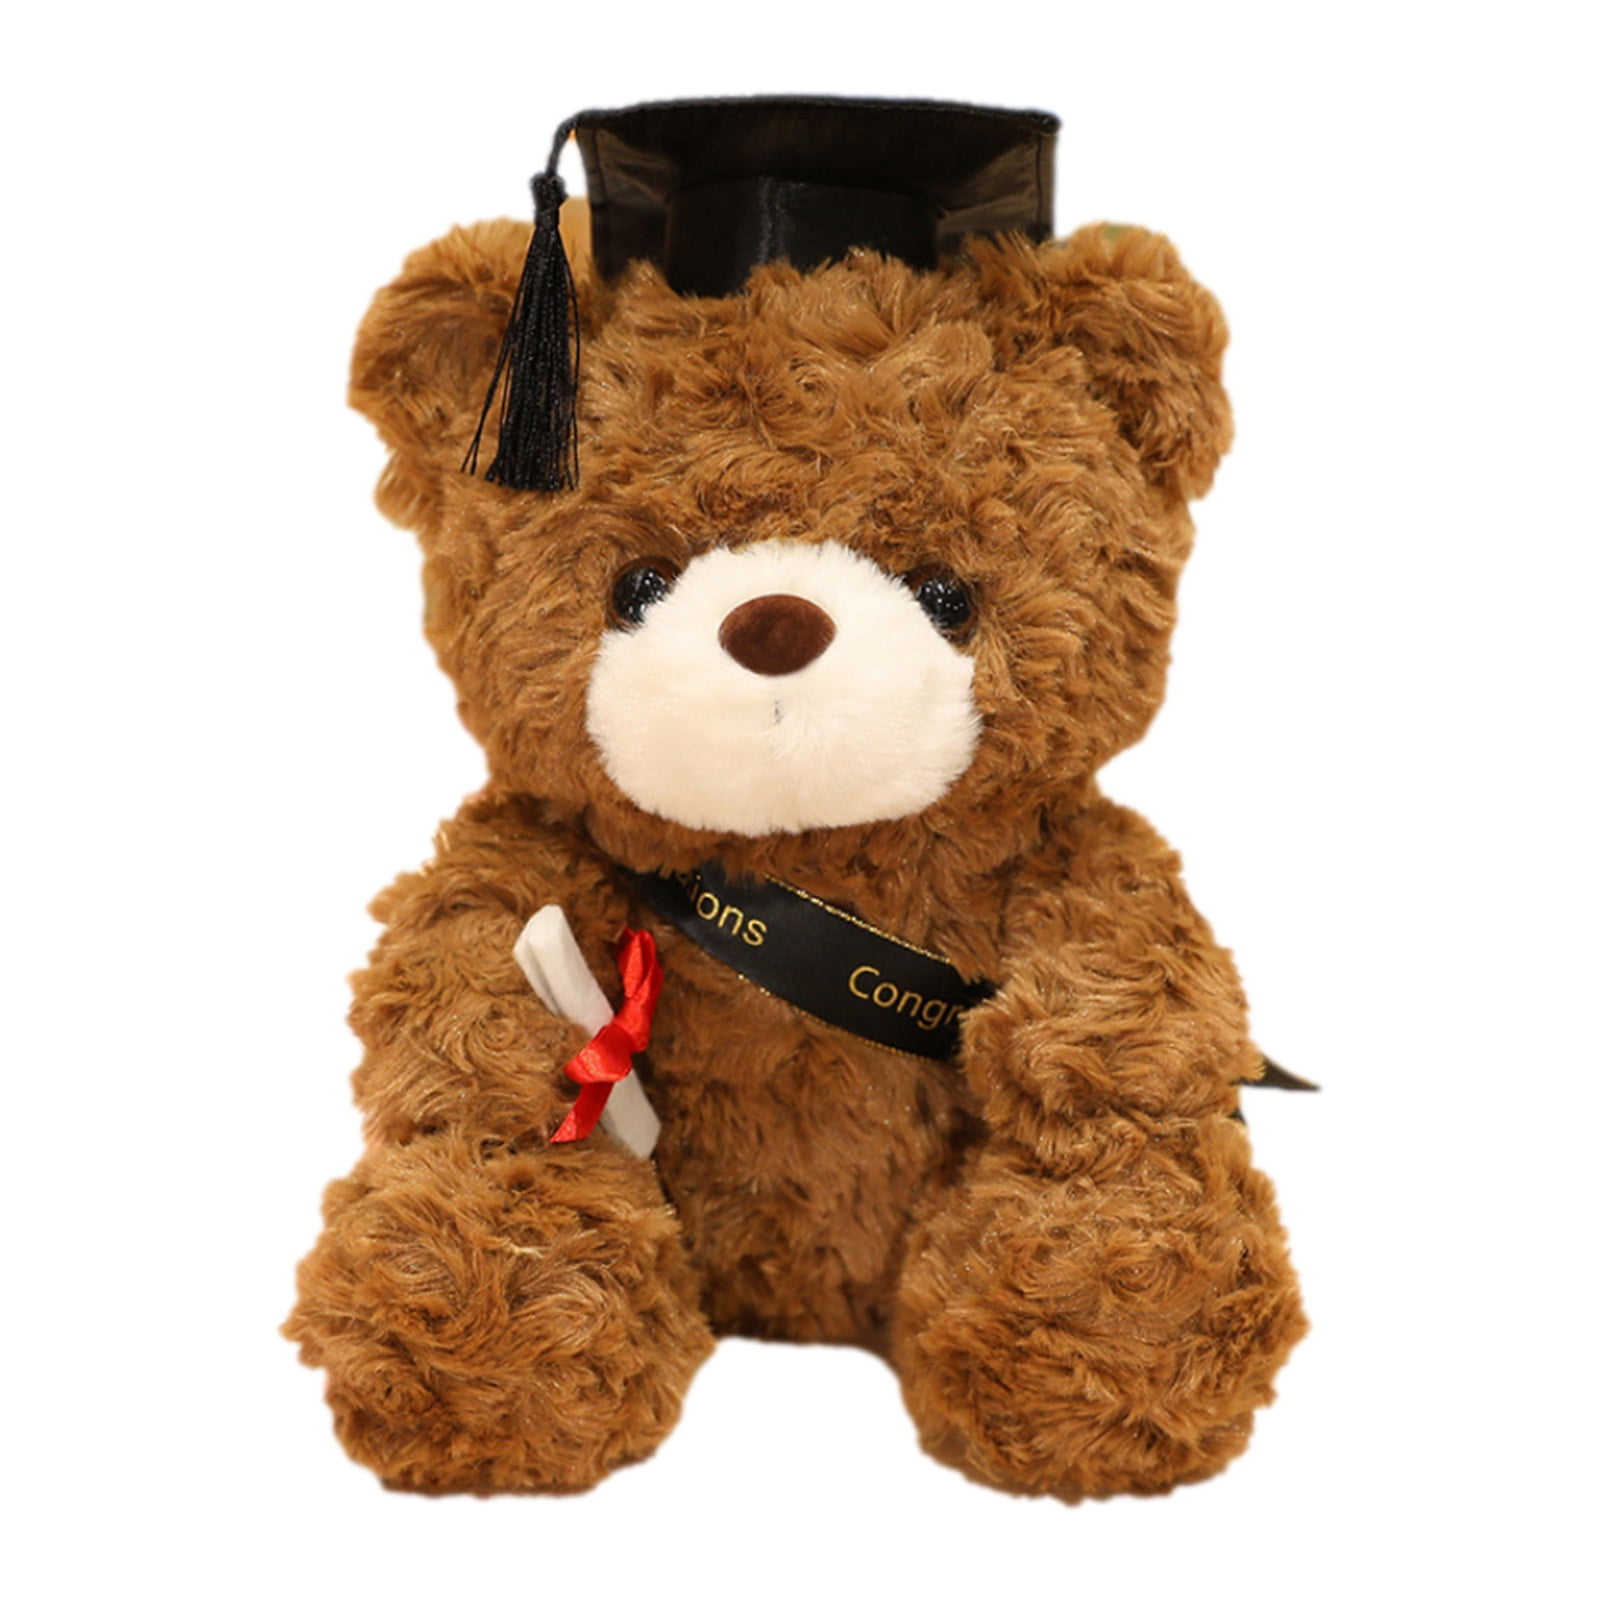 New 36cm Soft Plush Cuddly Graduation Teddy Bear Soft Toy Gift 